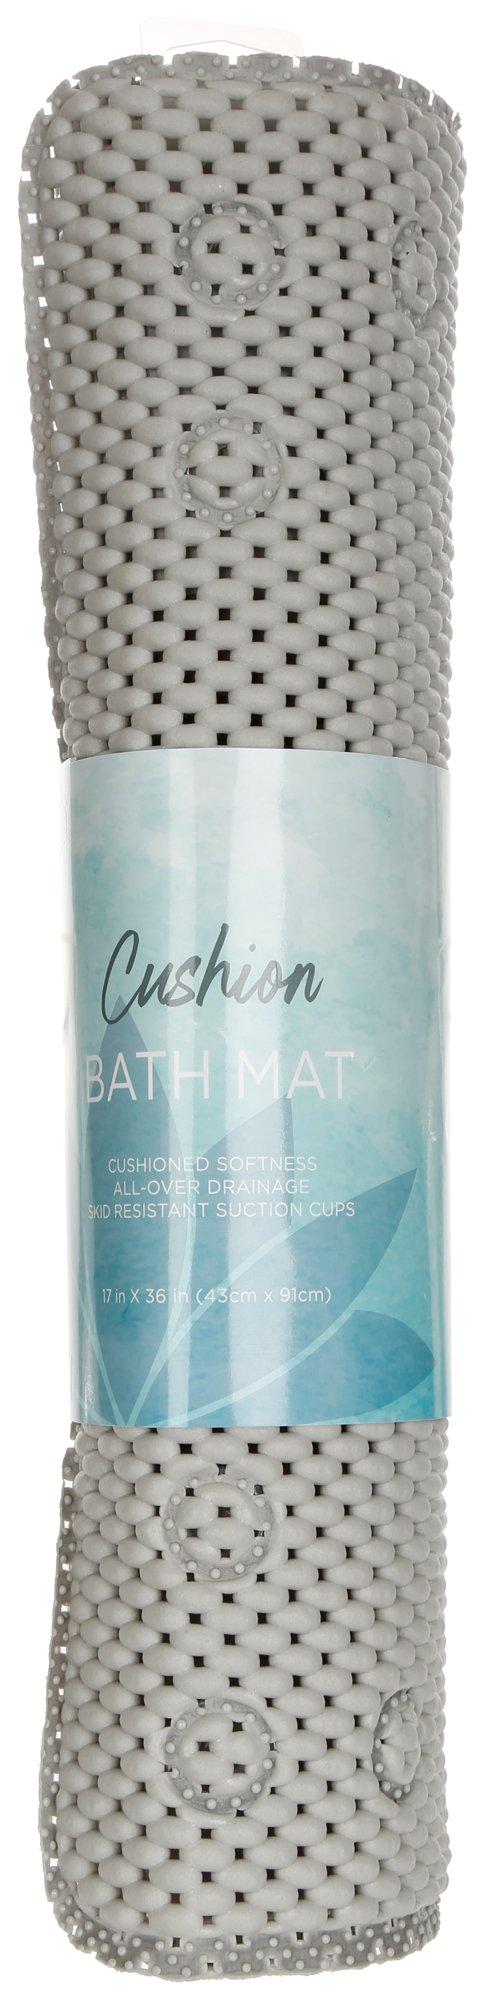 17x36 Cushioned Bath Mat